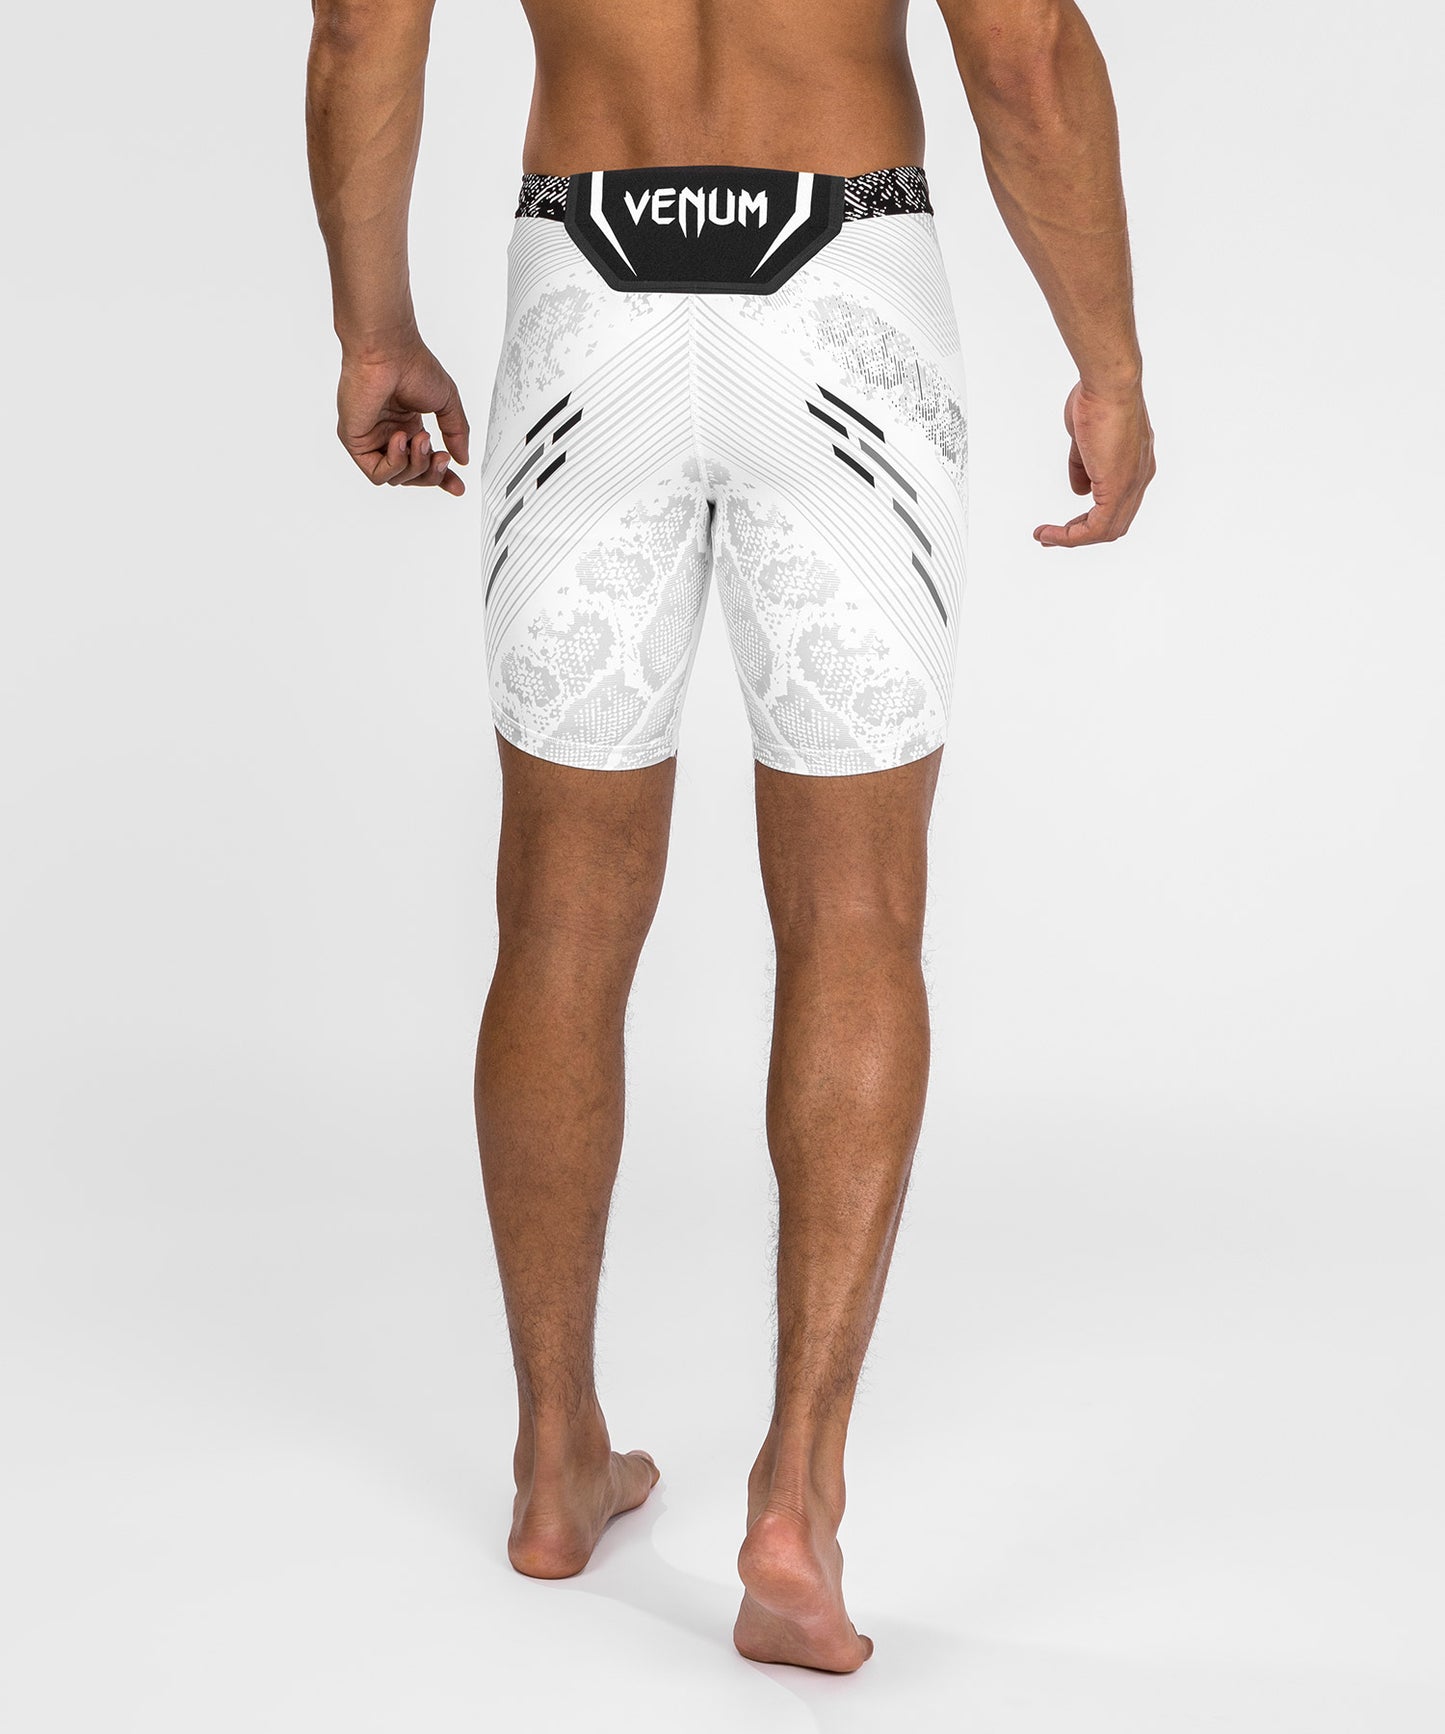 UFC Adrenaline by Venum Authentic Fight Night Vale Tudo Short für Männer - Weiß